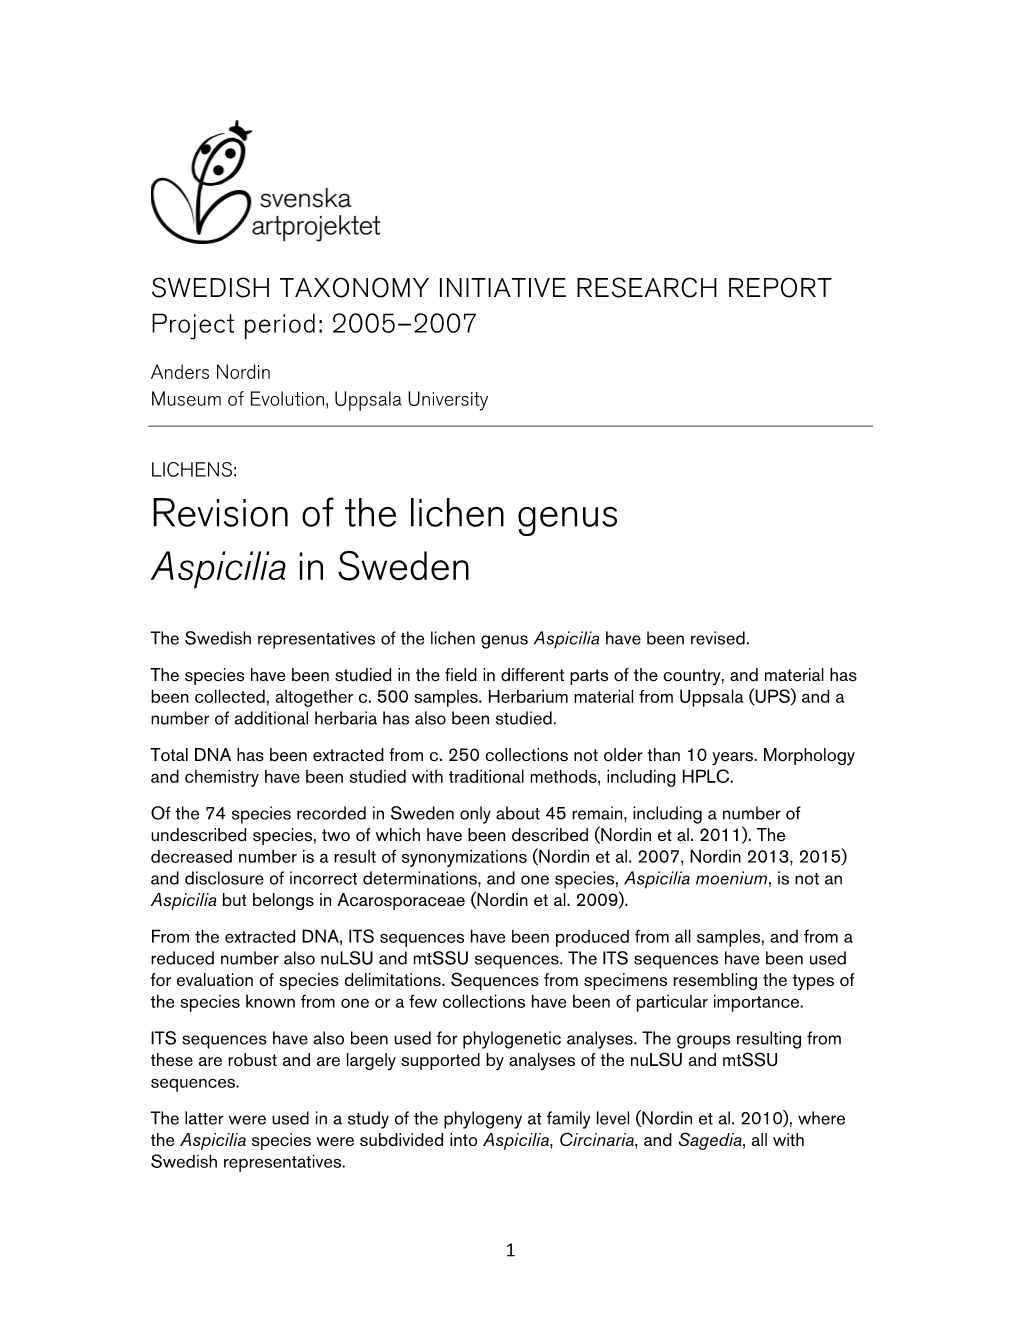 Revision of the Lichen Genus Aspicilia in Sweden